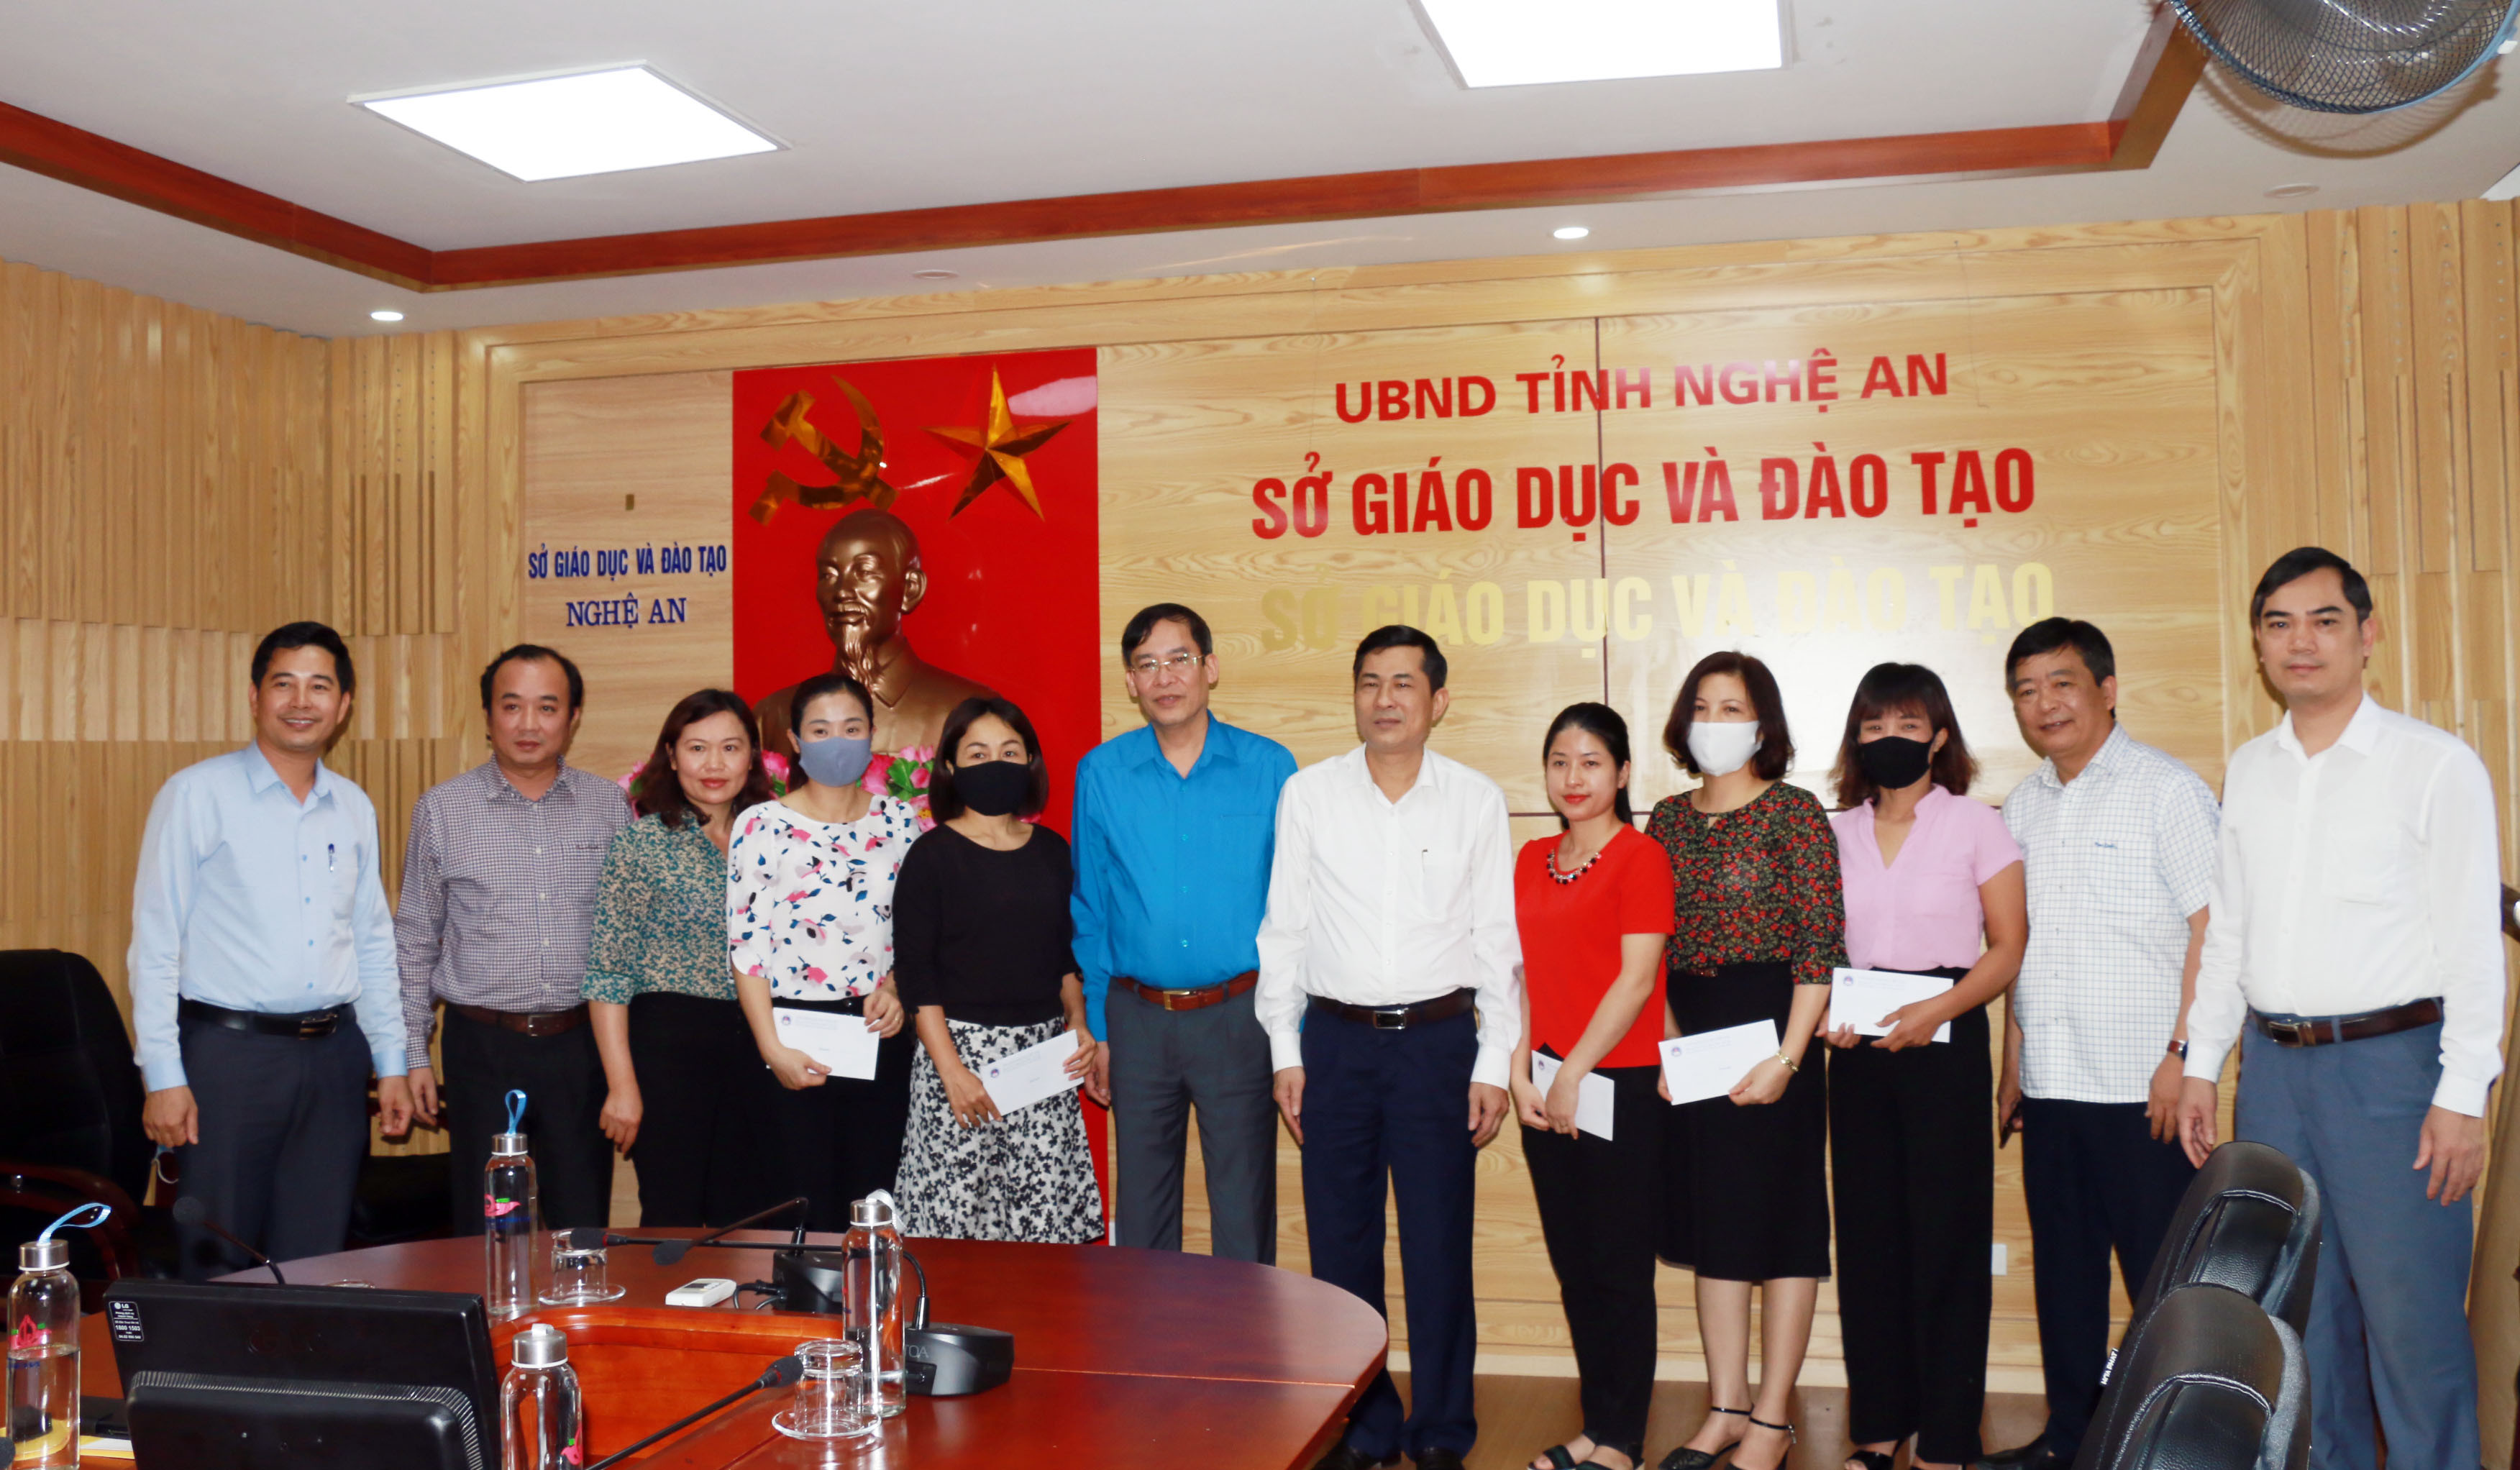 Lãnh đạo Công đoàn Giáo dục Việt Nam và Giám đốc Sở Giáo dục và Đào tạo trao quà hỗ trợ cho các giáo viên. Ảnh: Mỹ Hà